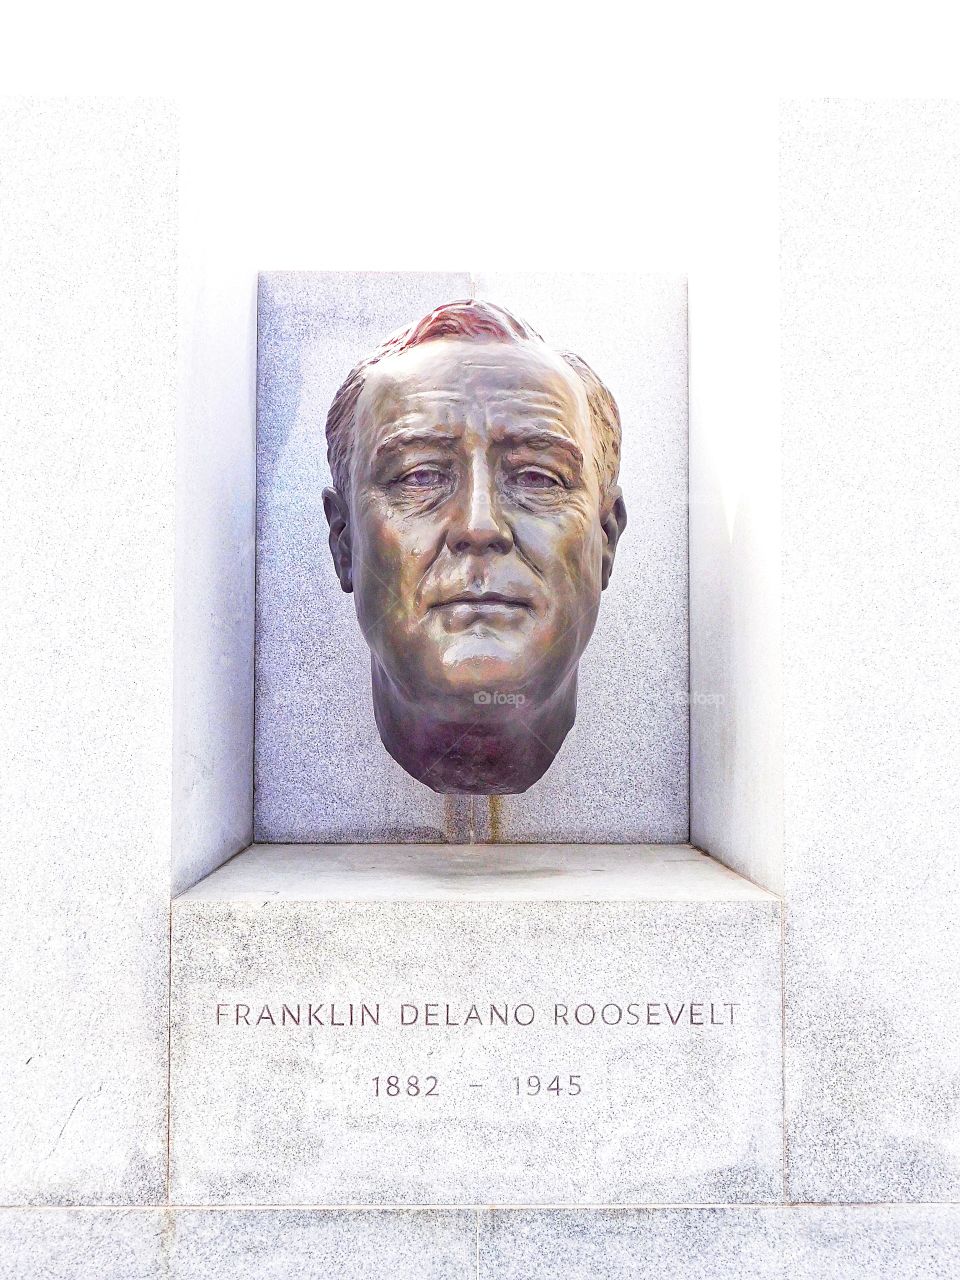 Franklin Delano Roosevelt sculpture at Four Freedoms Park